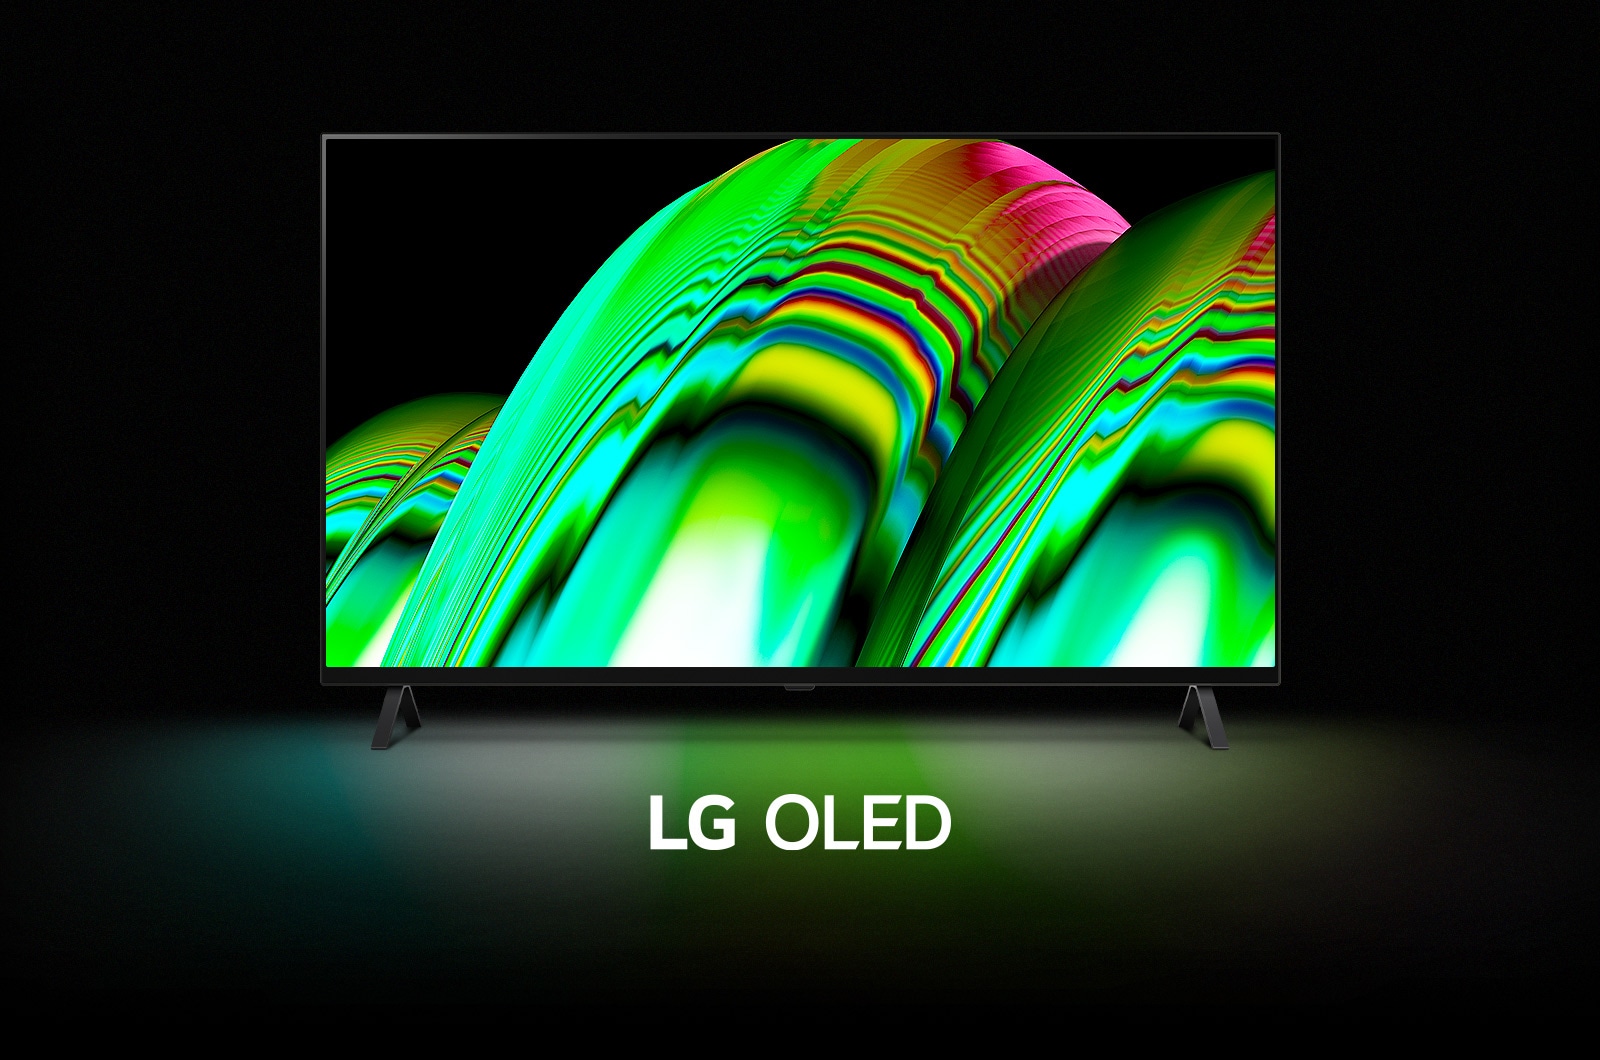 نمط موجة تجريدية خضراء يملأ الشاشة ثم يصغر تدريجيًا ليكشف عن LG OLED A2. تتحول الشاشة إلى اللون الأسود ثم يُعرض نمط الموجة مرة أخرى مع وجود عبارة "LG OLED" تحتها.